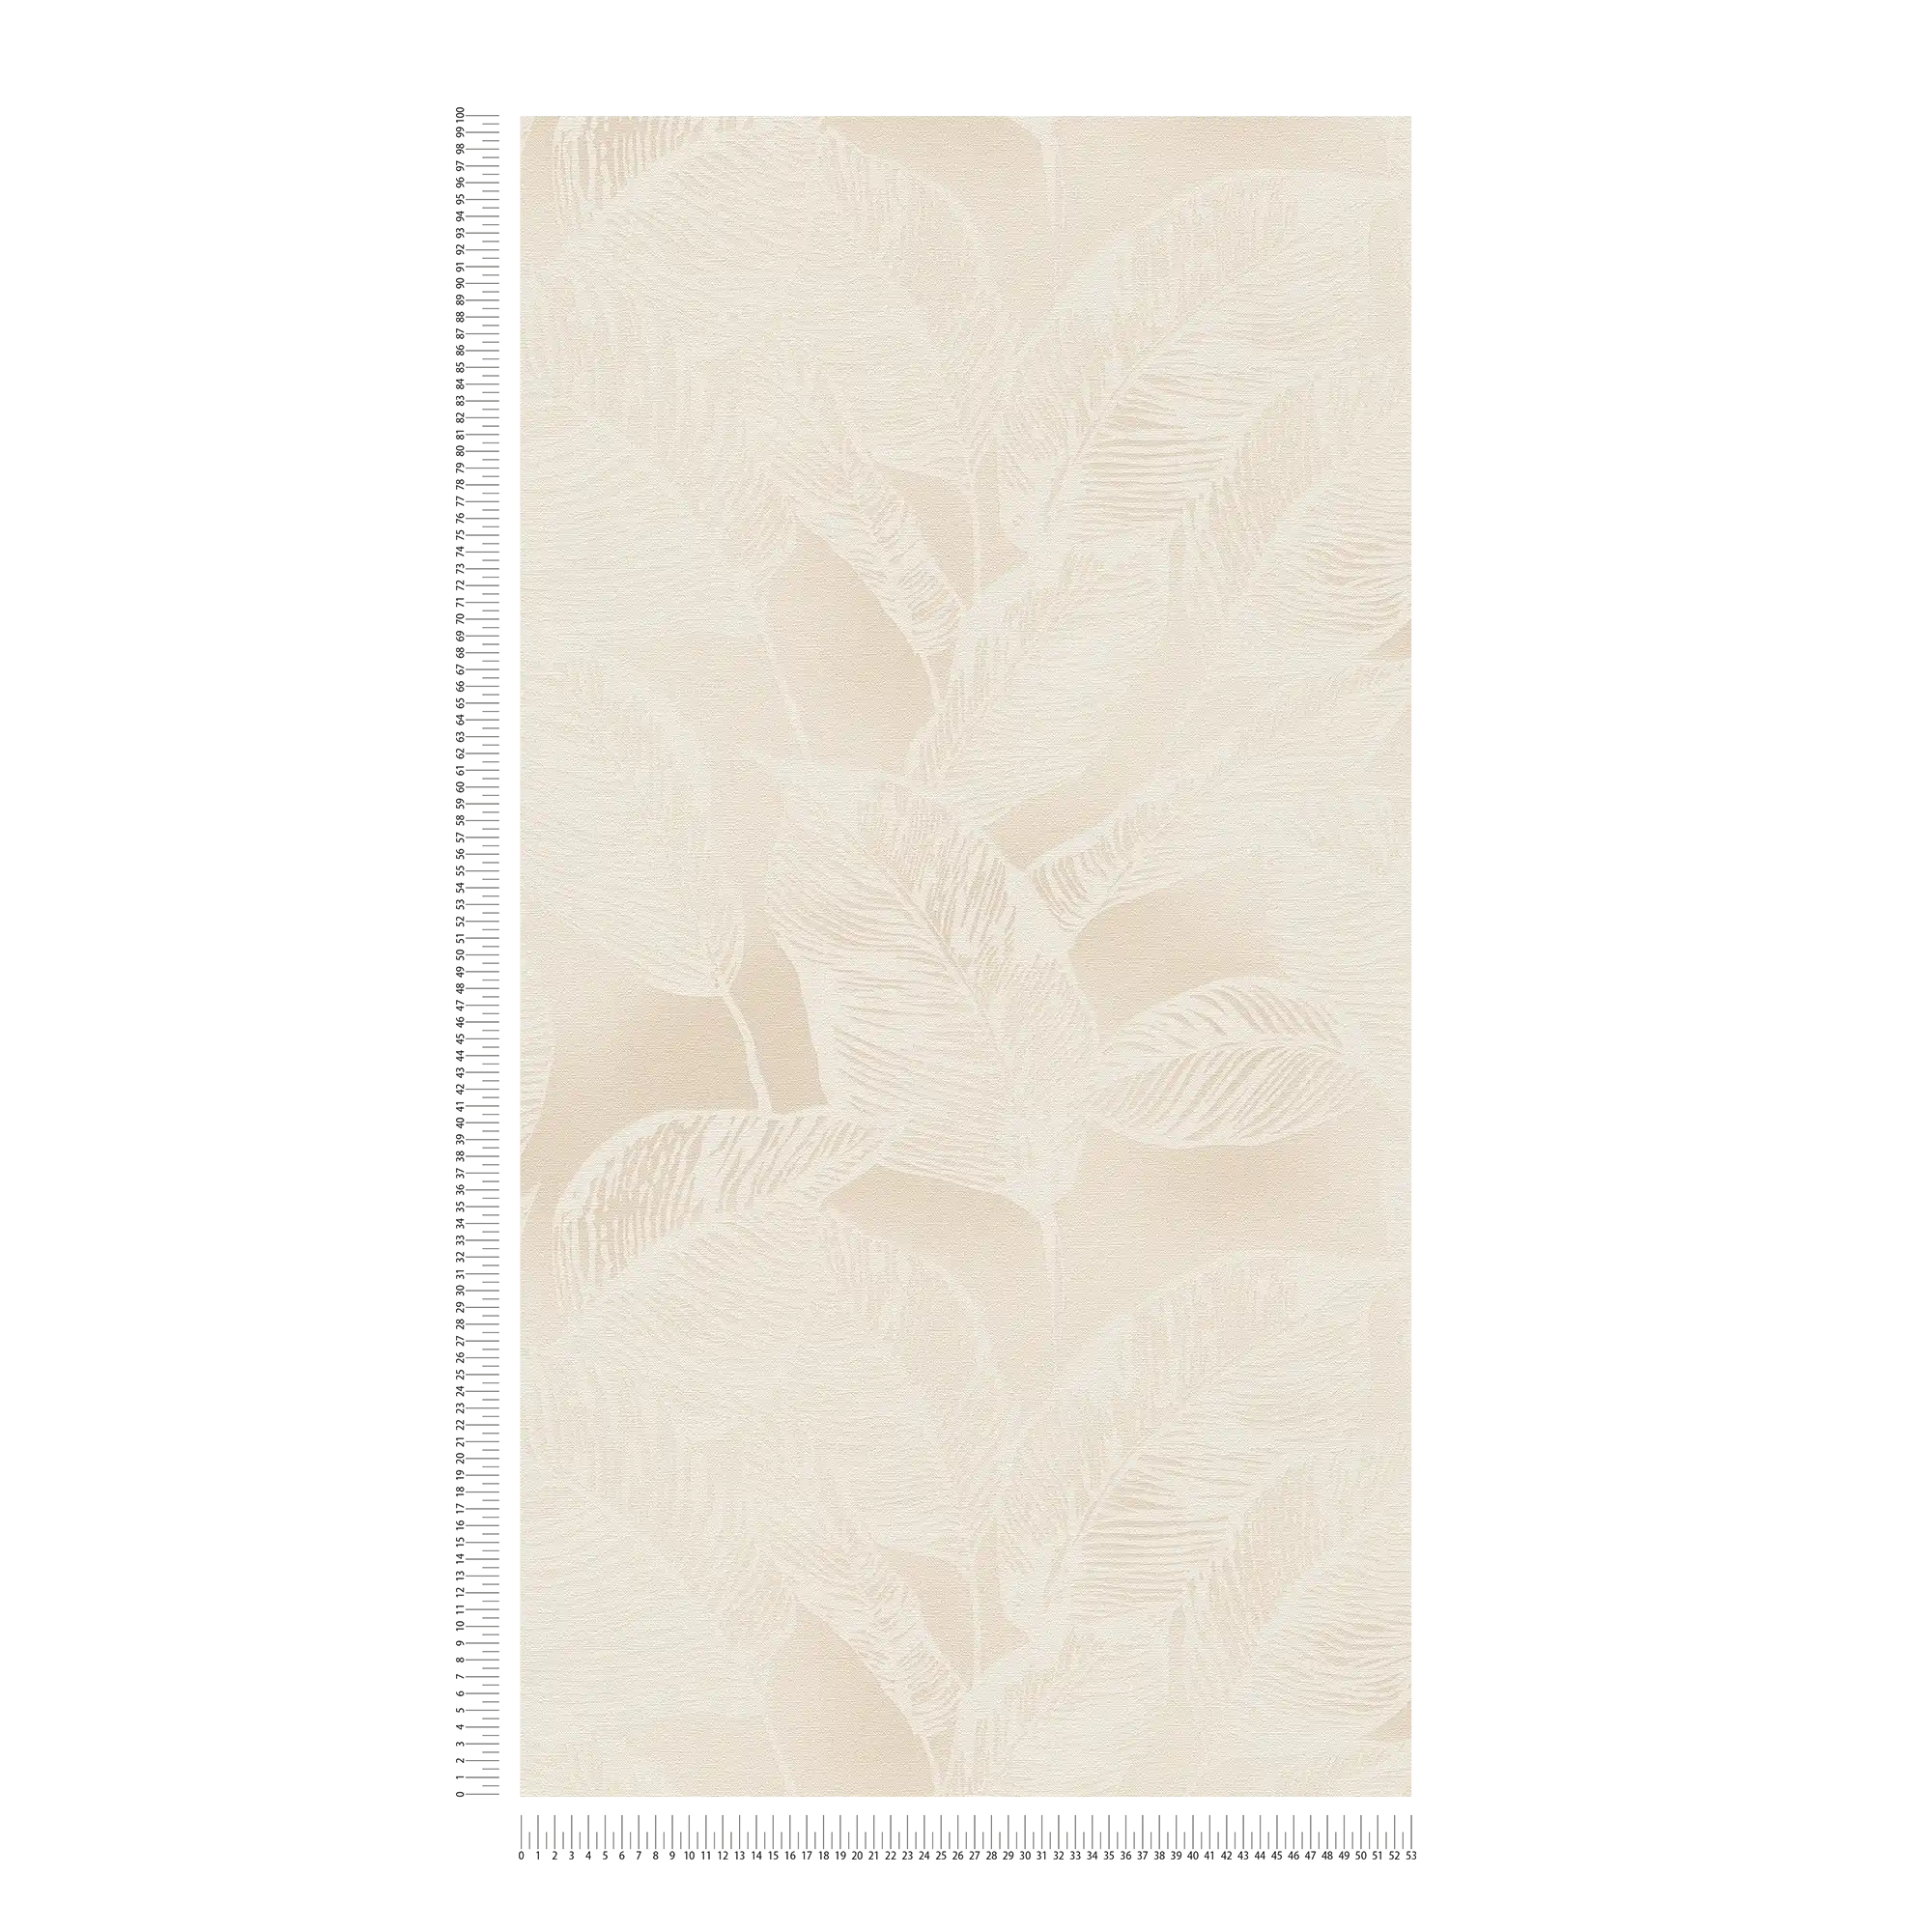             Papel pintado tejido-no tejido con motivo de hojas sin PVC - beige, blanco
        